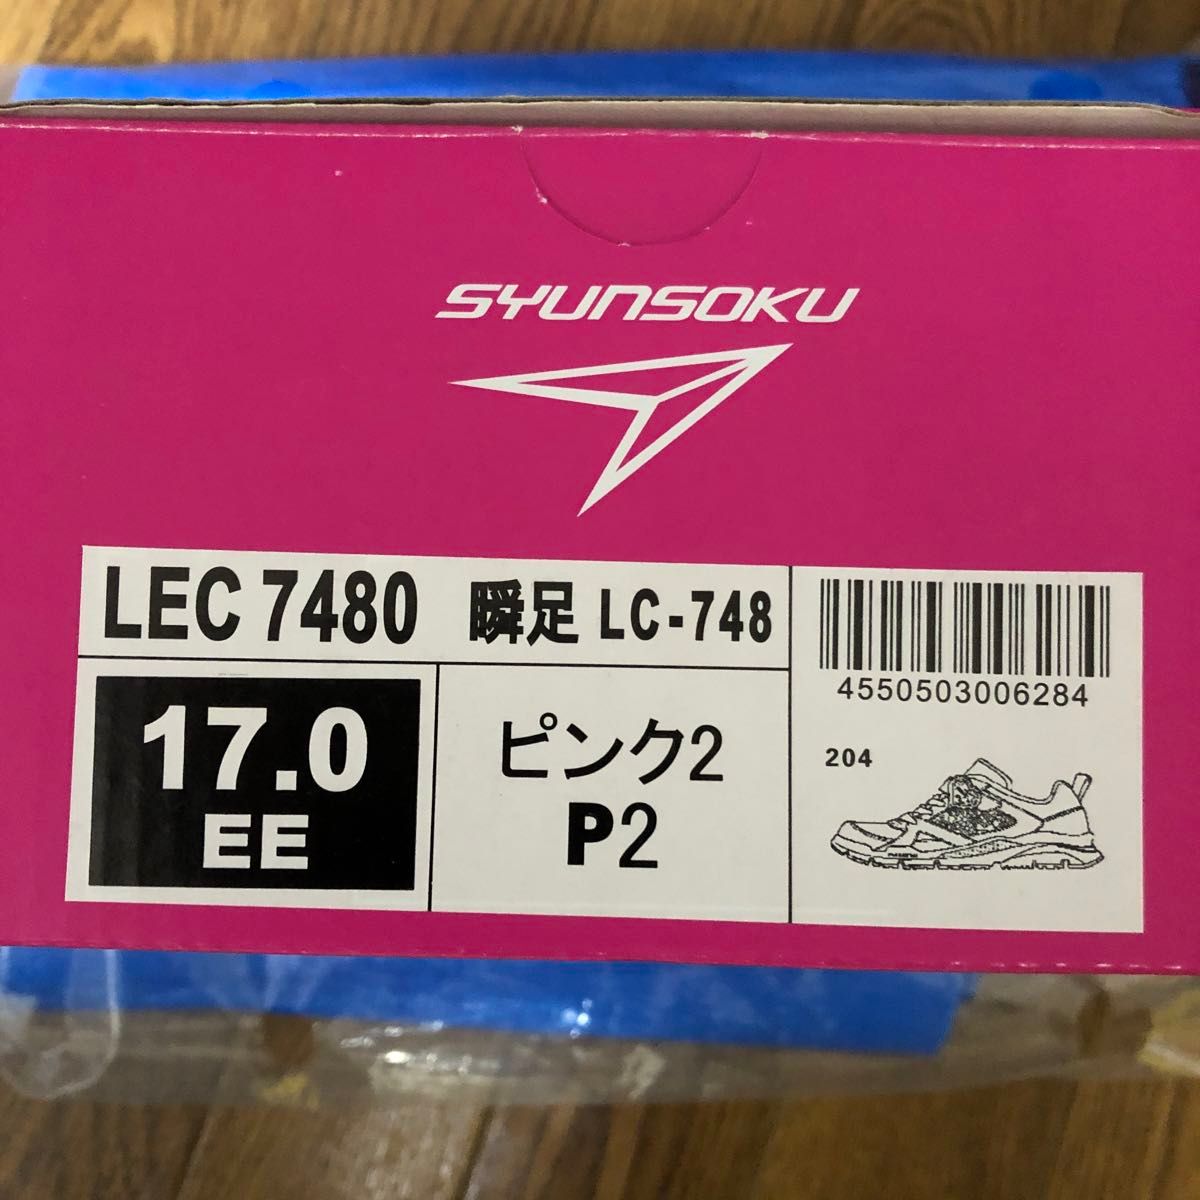 [シュンソク] スニーカー 運動靴 軽量 16~23cm 2E キッズ 女の子 LEC 7480 ピンク白底 17.0 cm